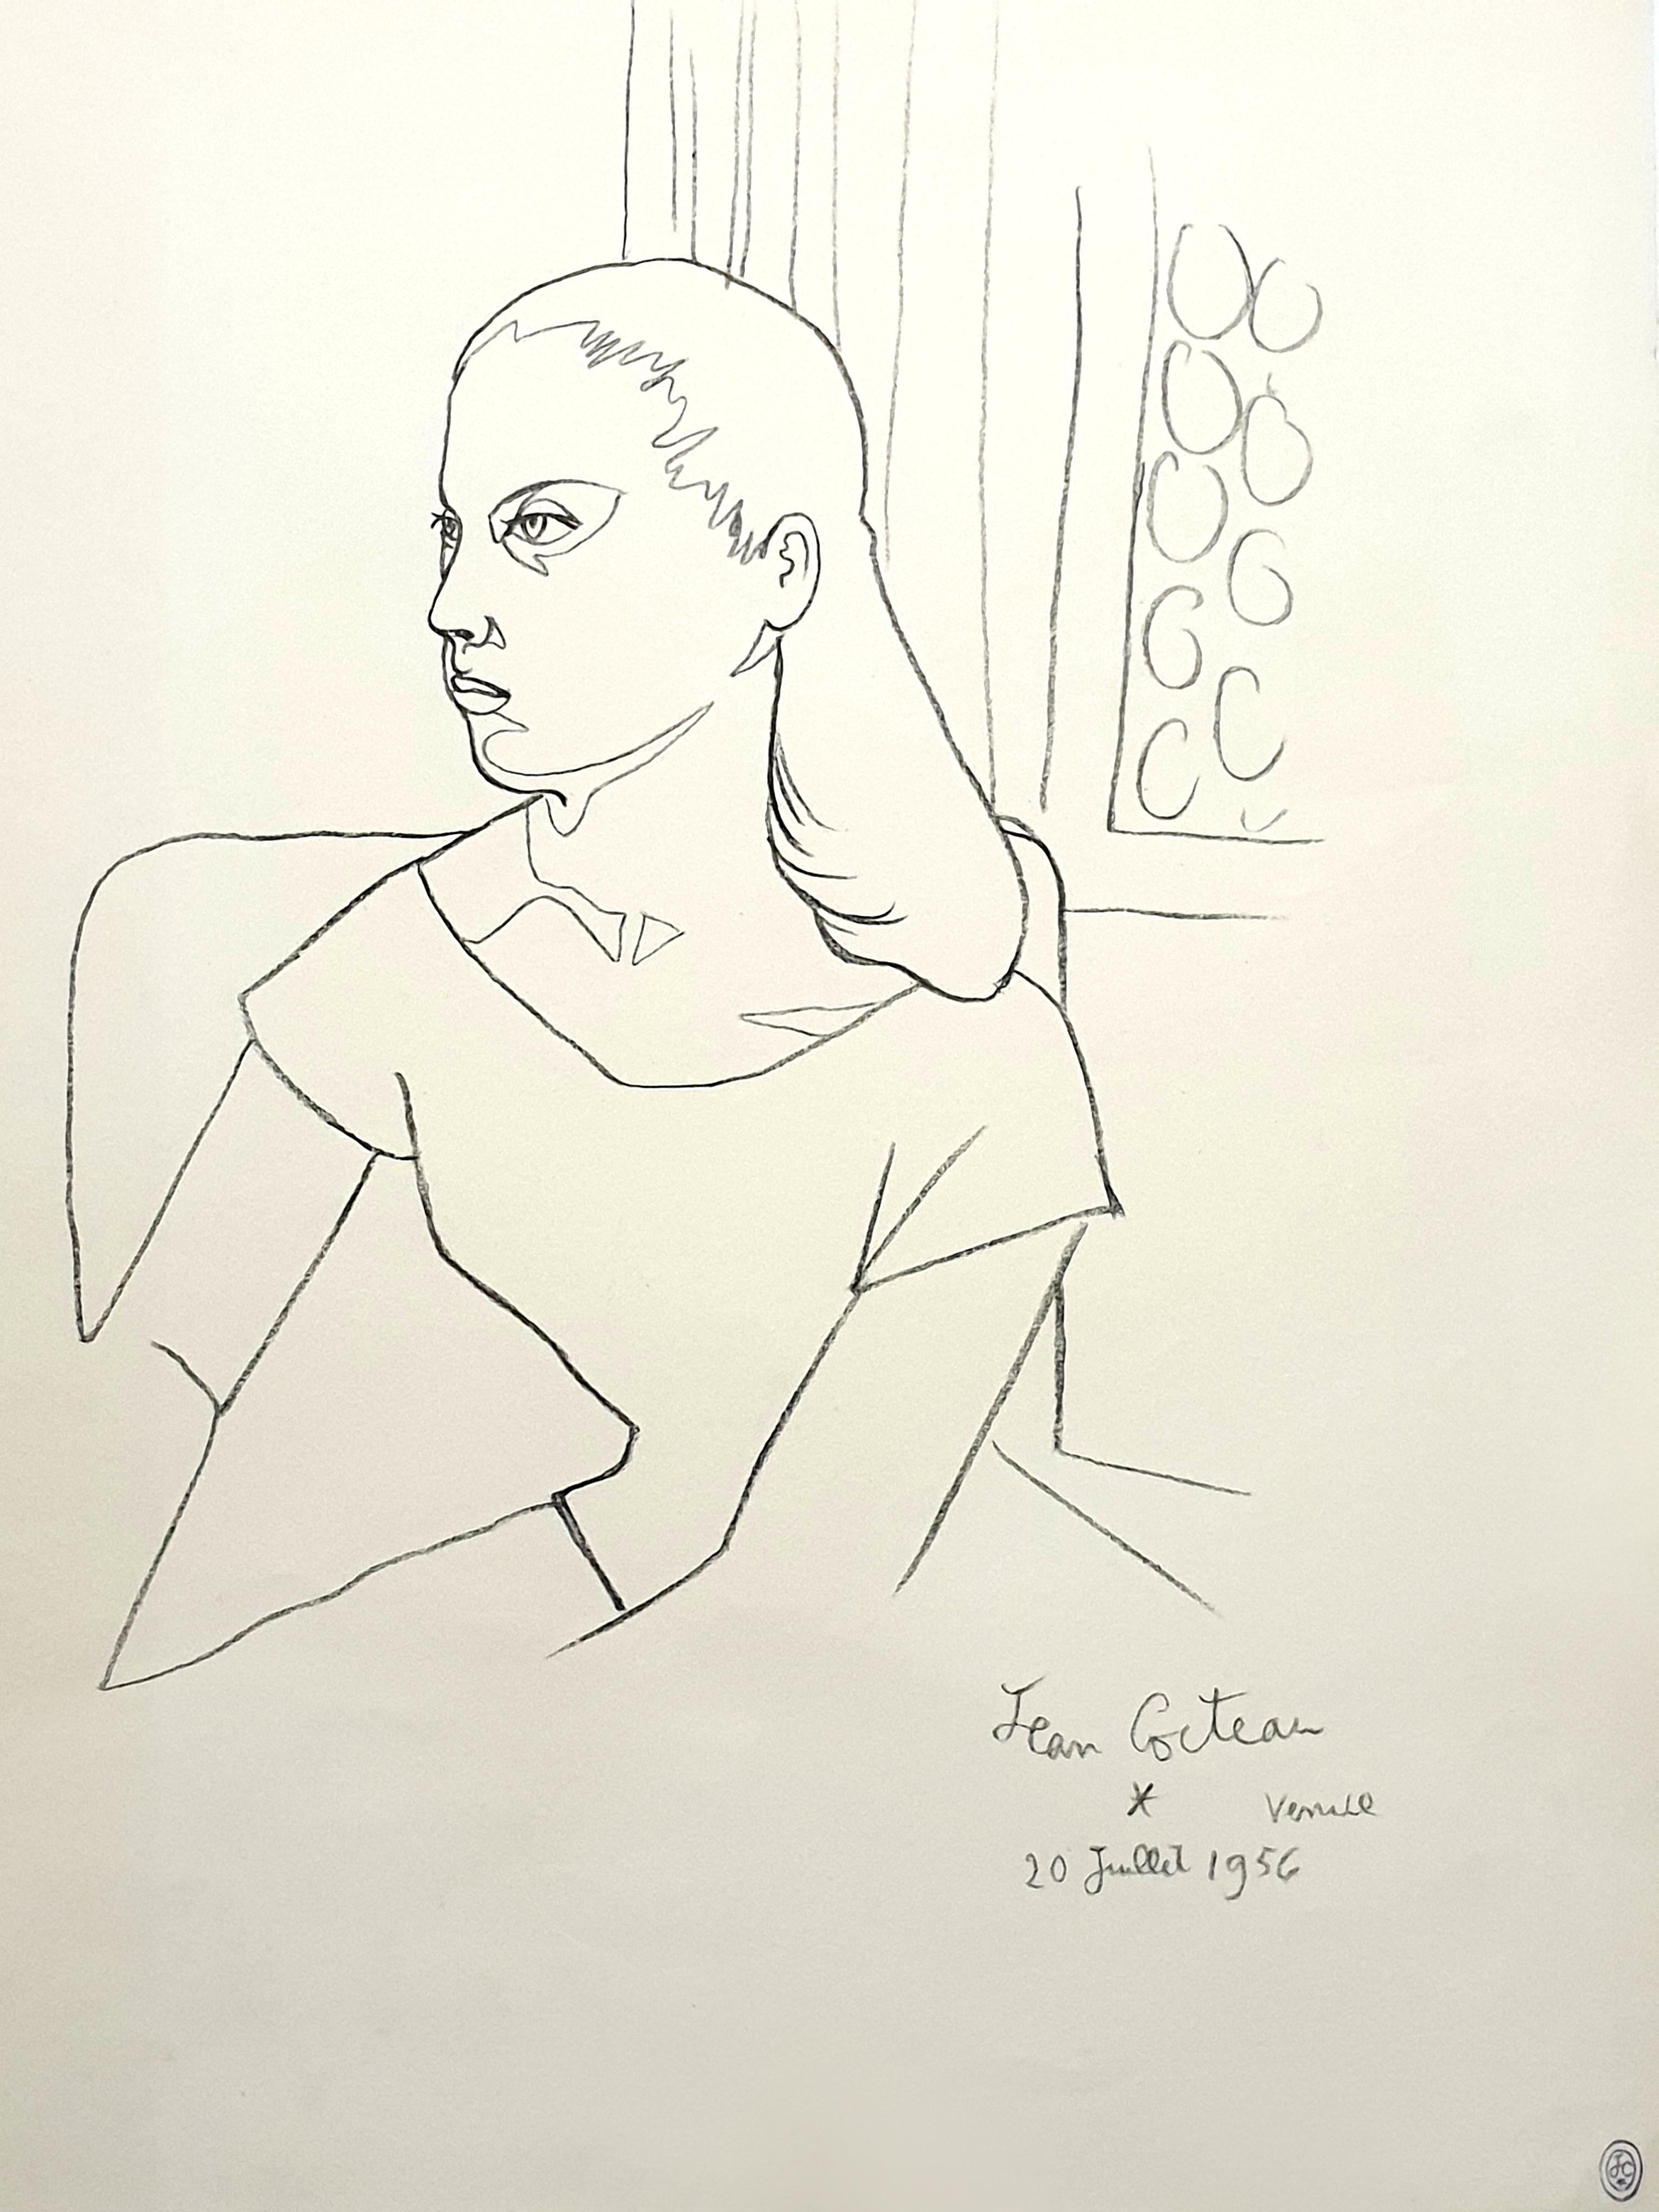 Jean Cocteau - Junges Mädchen - Original Lithographie
Signiert und datiert in der Platte
Briefmarken signiert
Abmessungen: 53 x 42 cm
1956
Herkunft : Nachfolge Dermit, Cocteaus Erbe